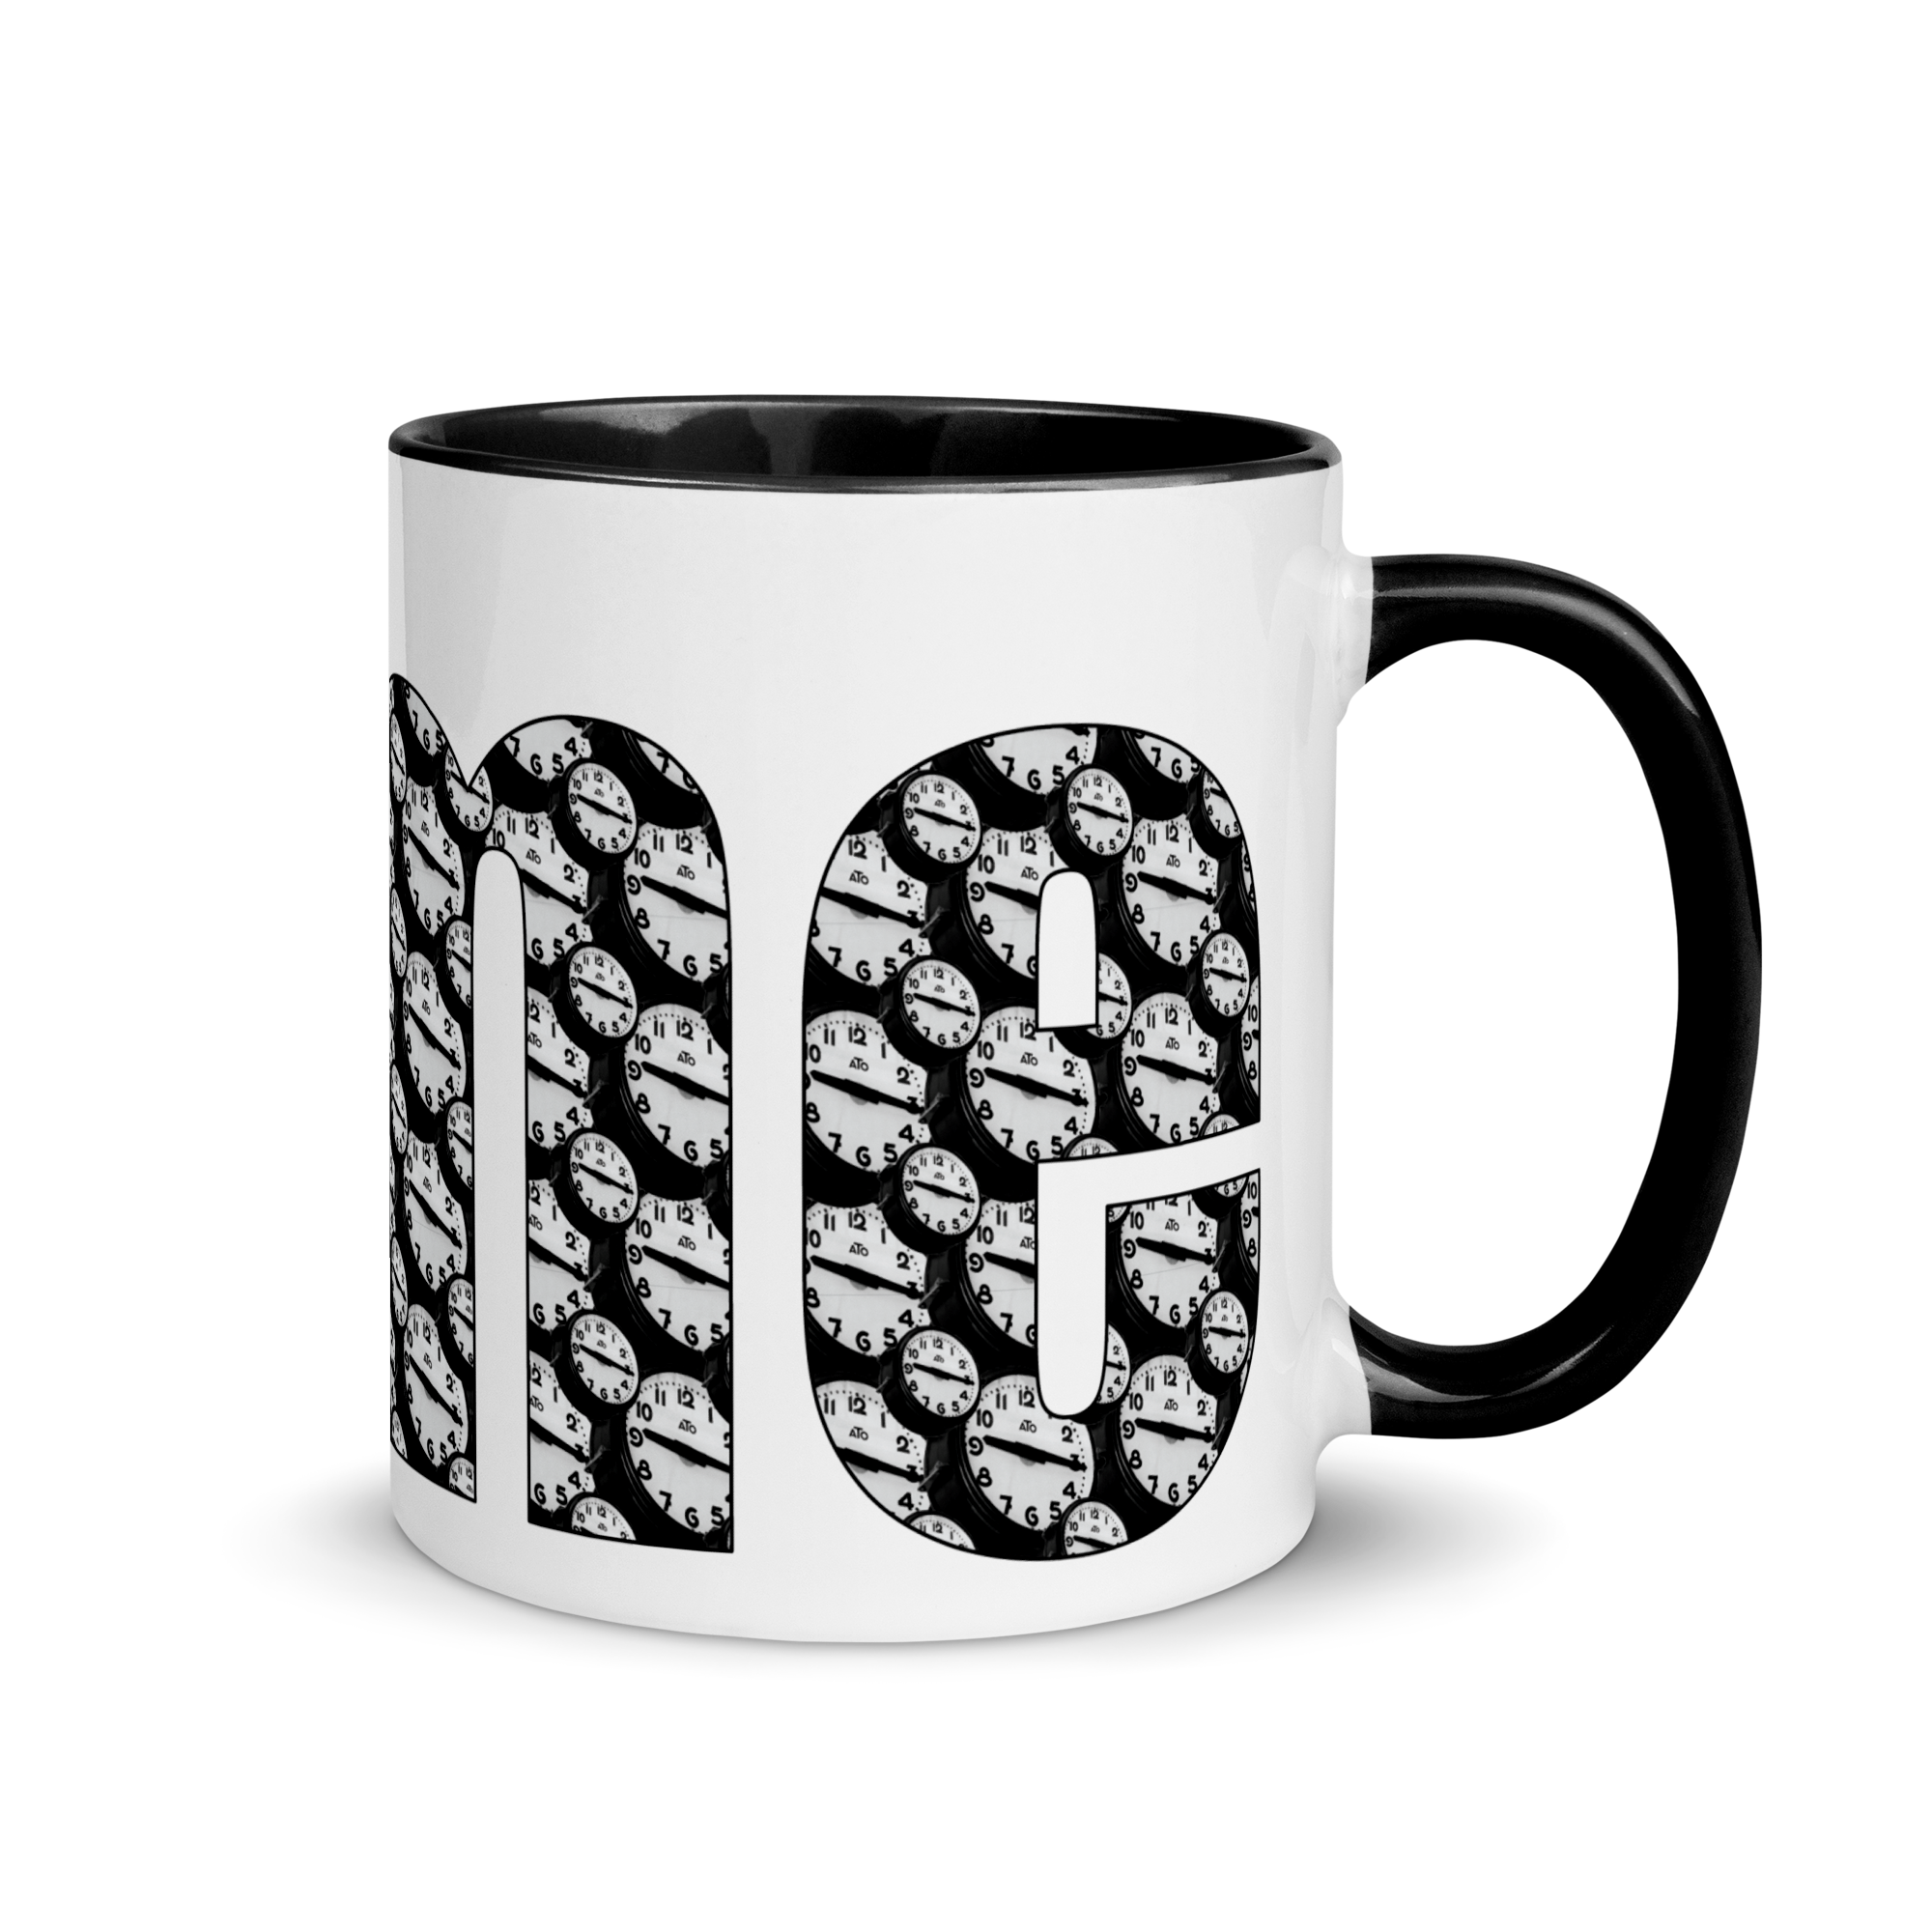 white-ceramic-mug-with-color-inside-black-11oz-right-6386681a619cc.png